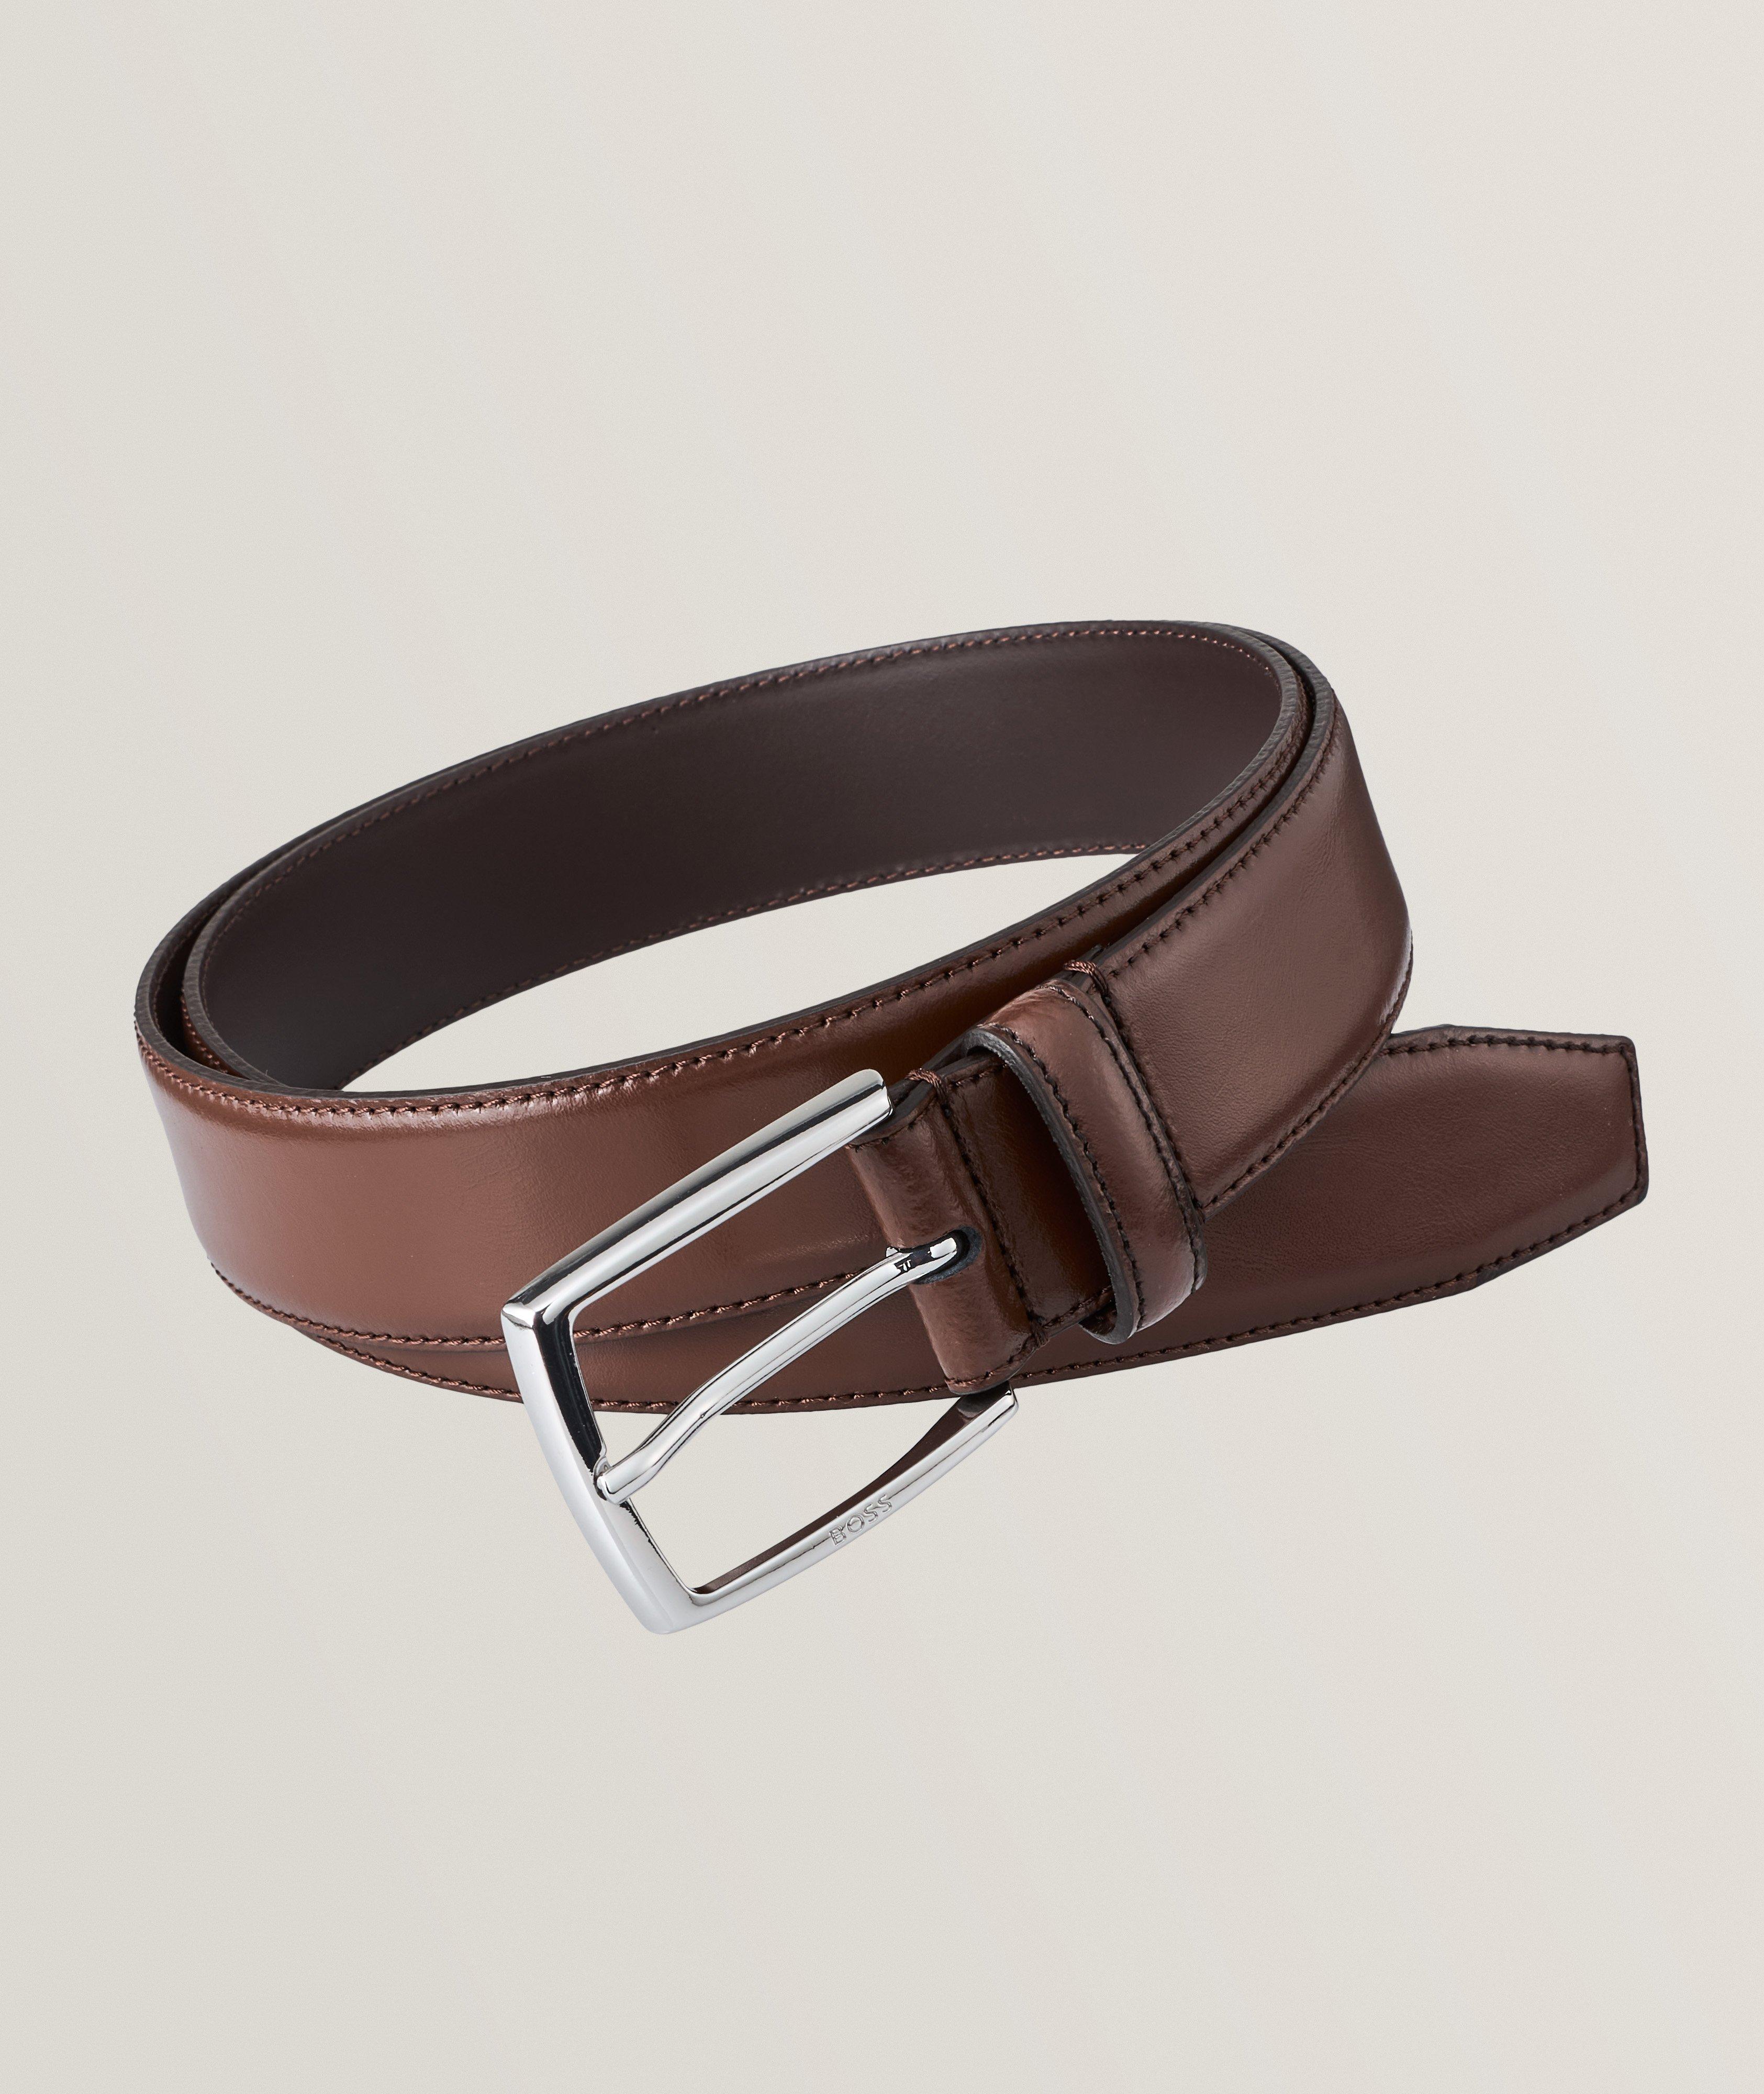 Designer Belts For Men